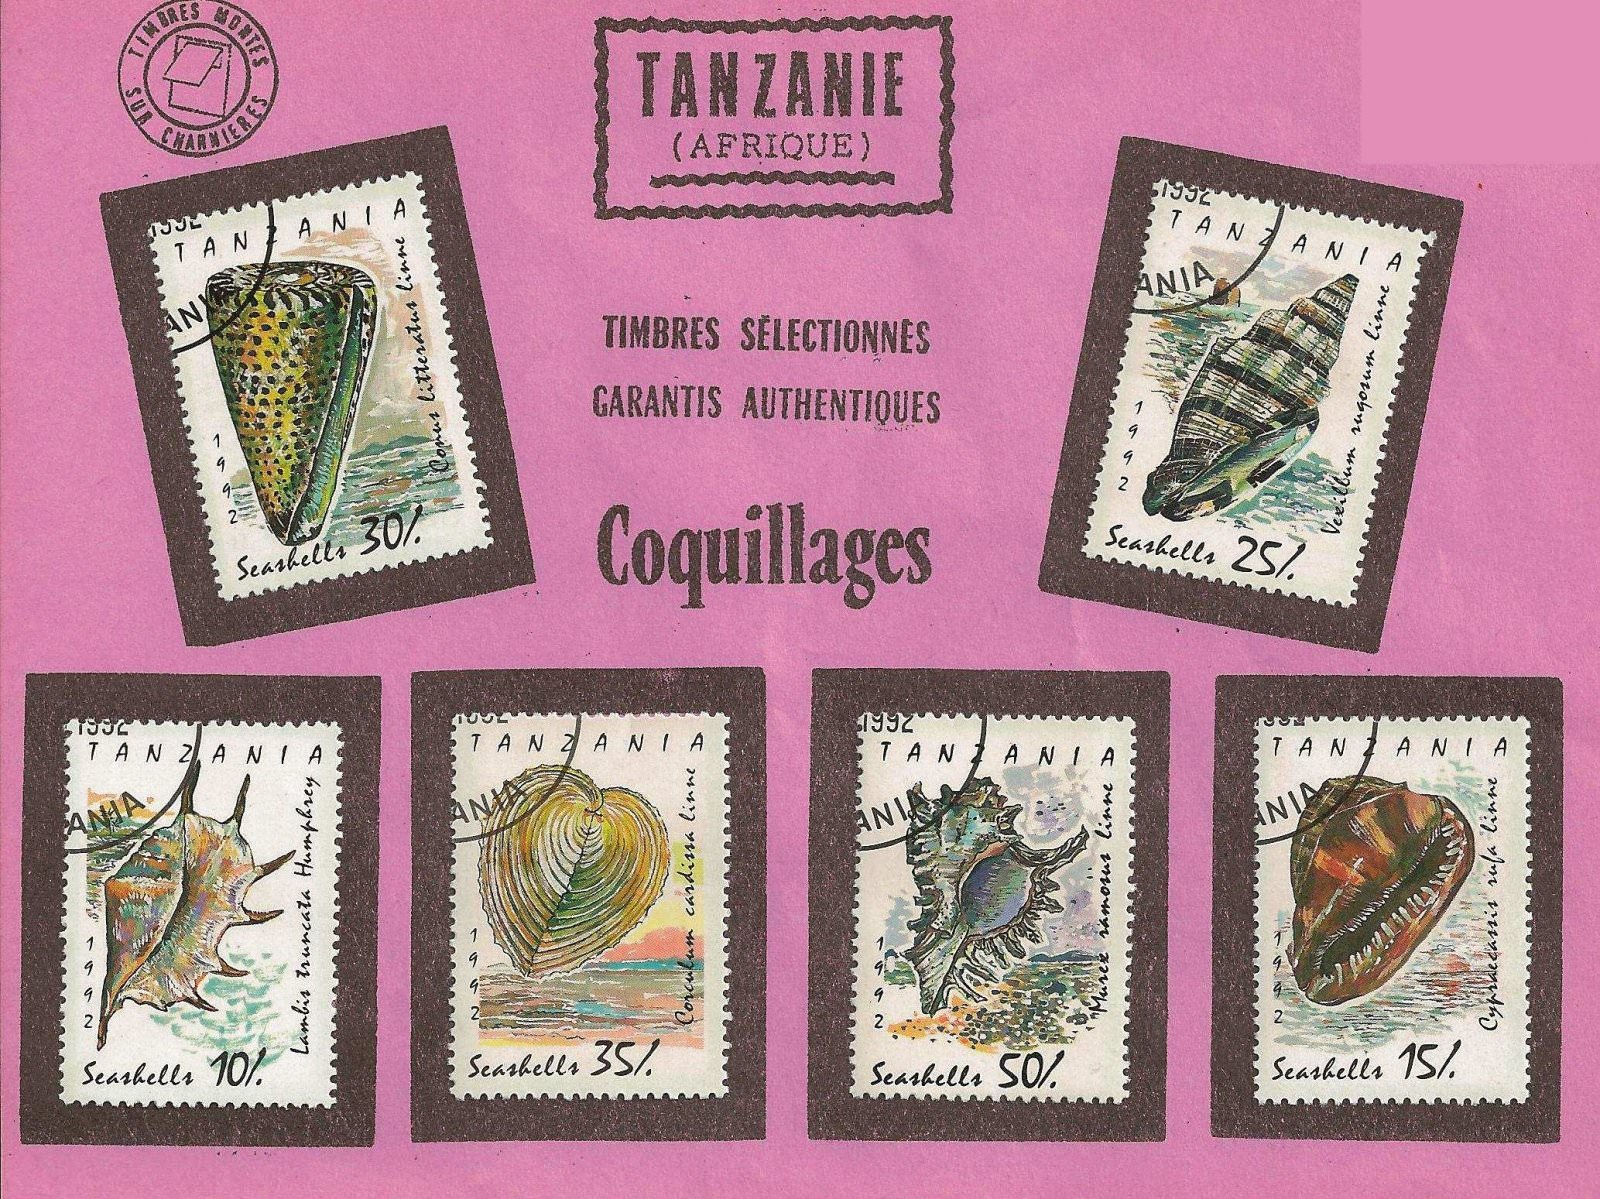 COQUILLAGES TANZANIE